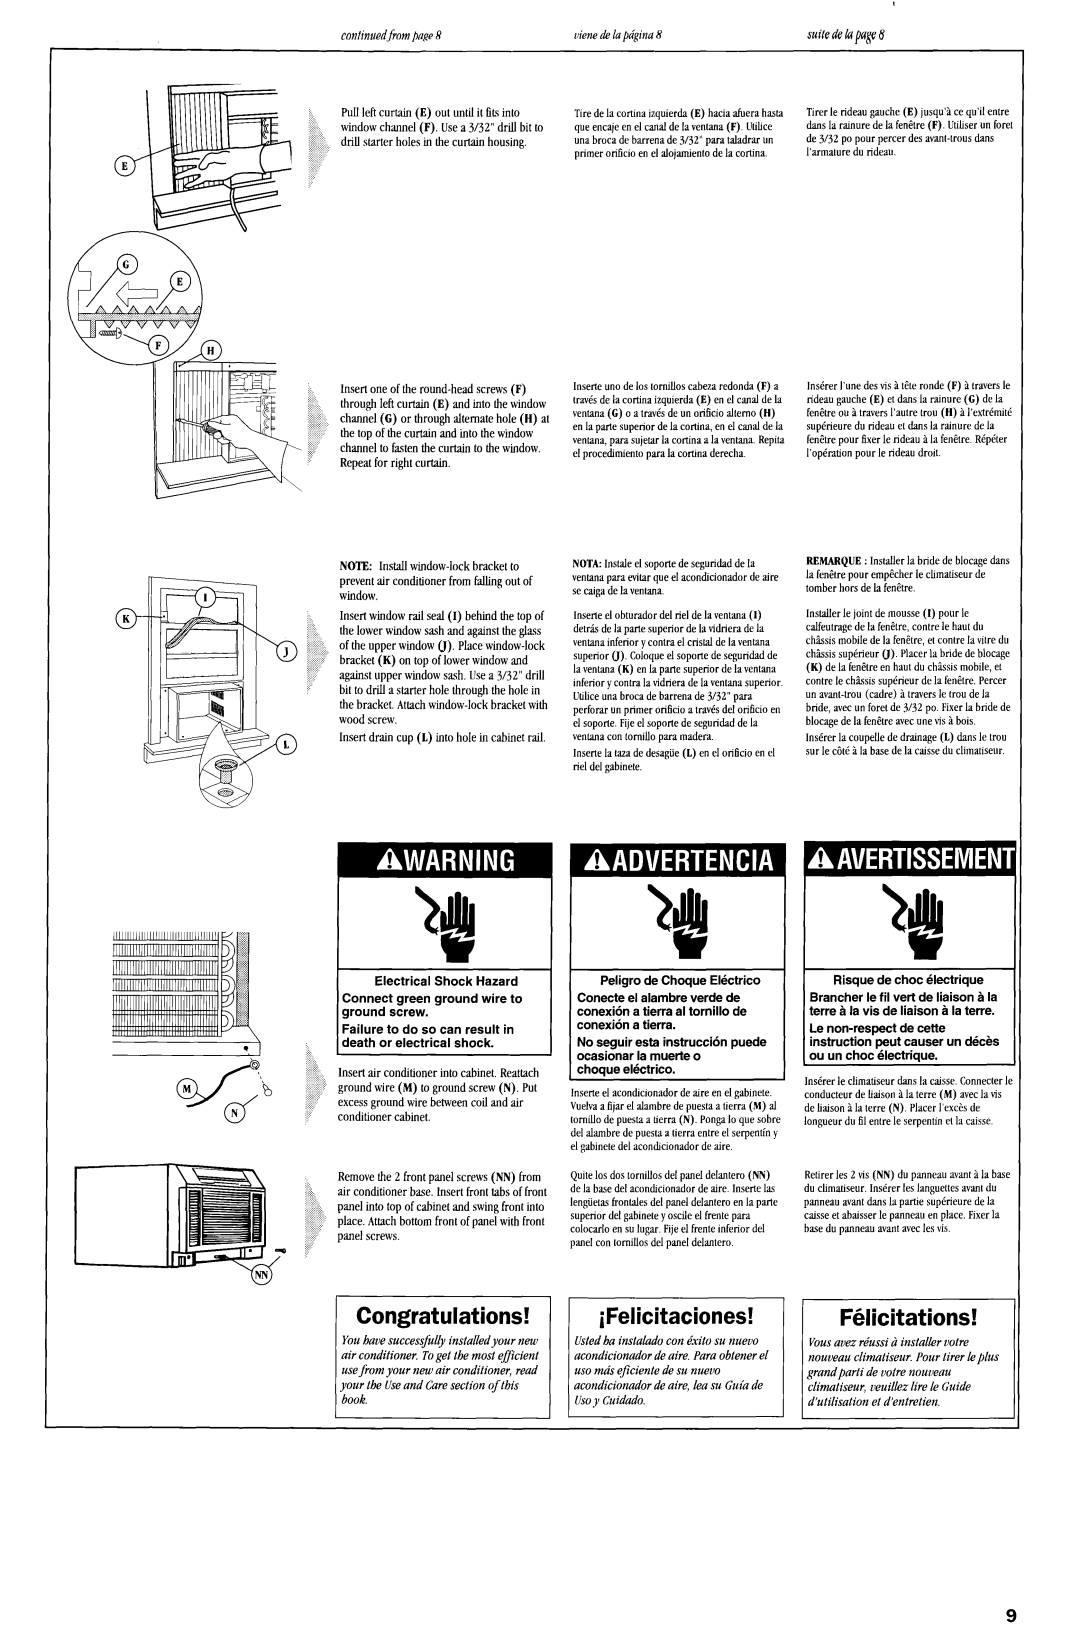 Whirlpool ACQ254XF0 manual I I FdGcitations, Congratulations, ifelicitaciones 